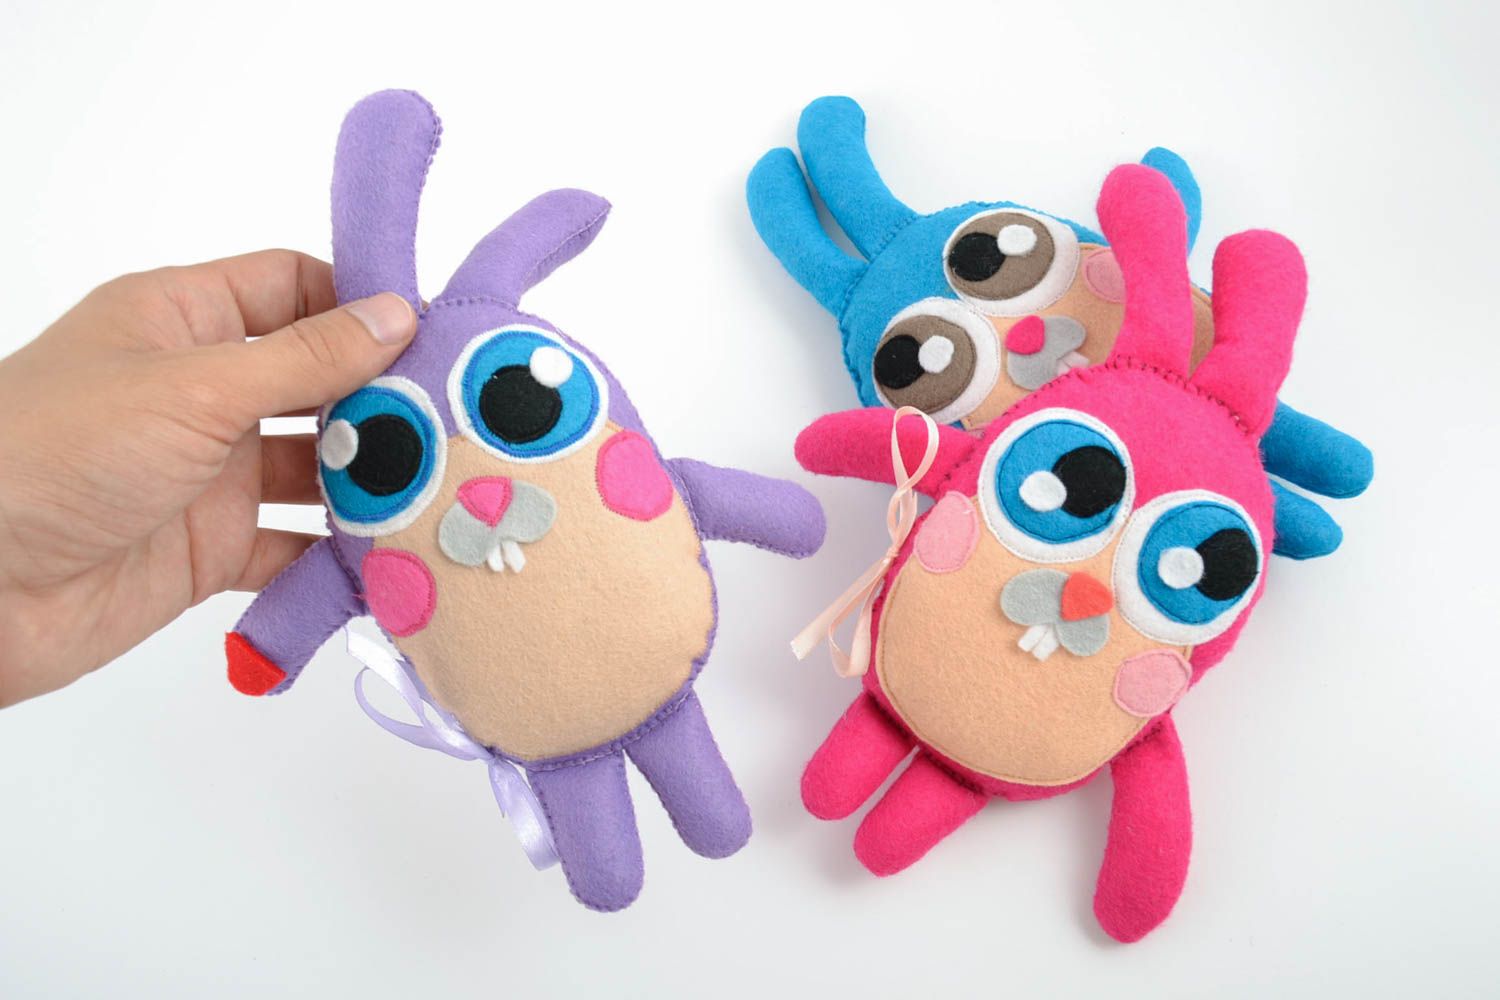 Мягкие игрушки набор зайцев ручной работы из ткани авторские для детей 3 штуки фото 2